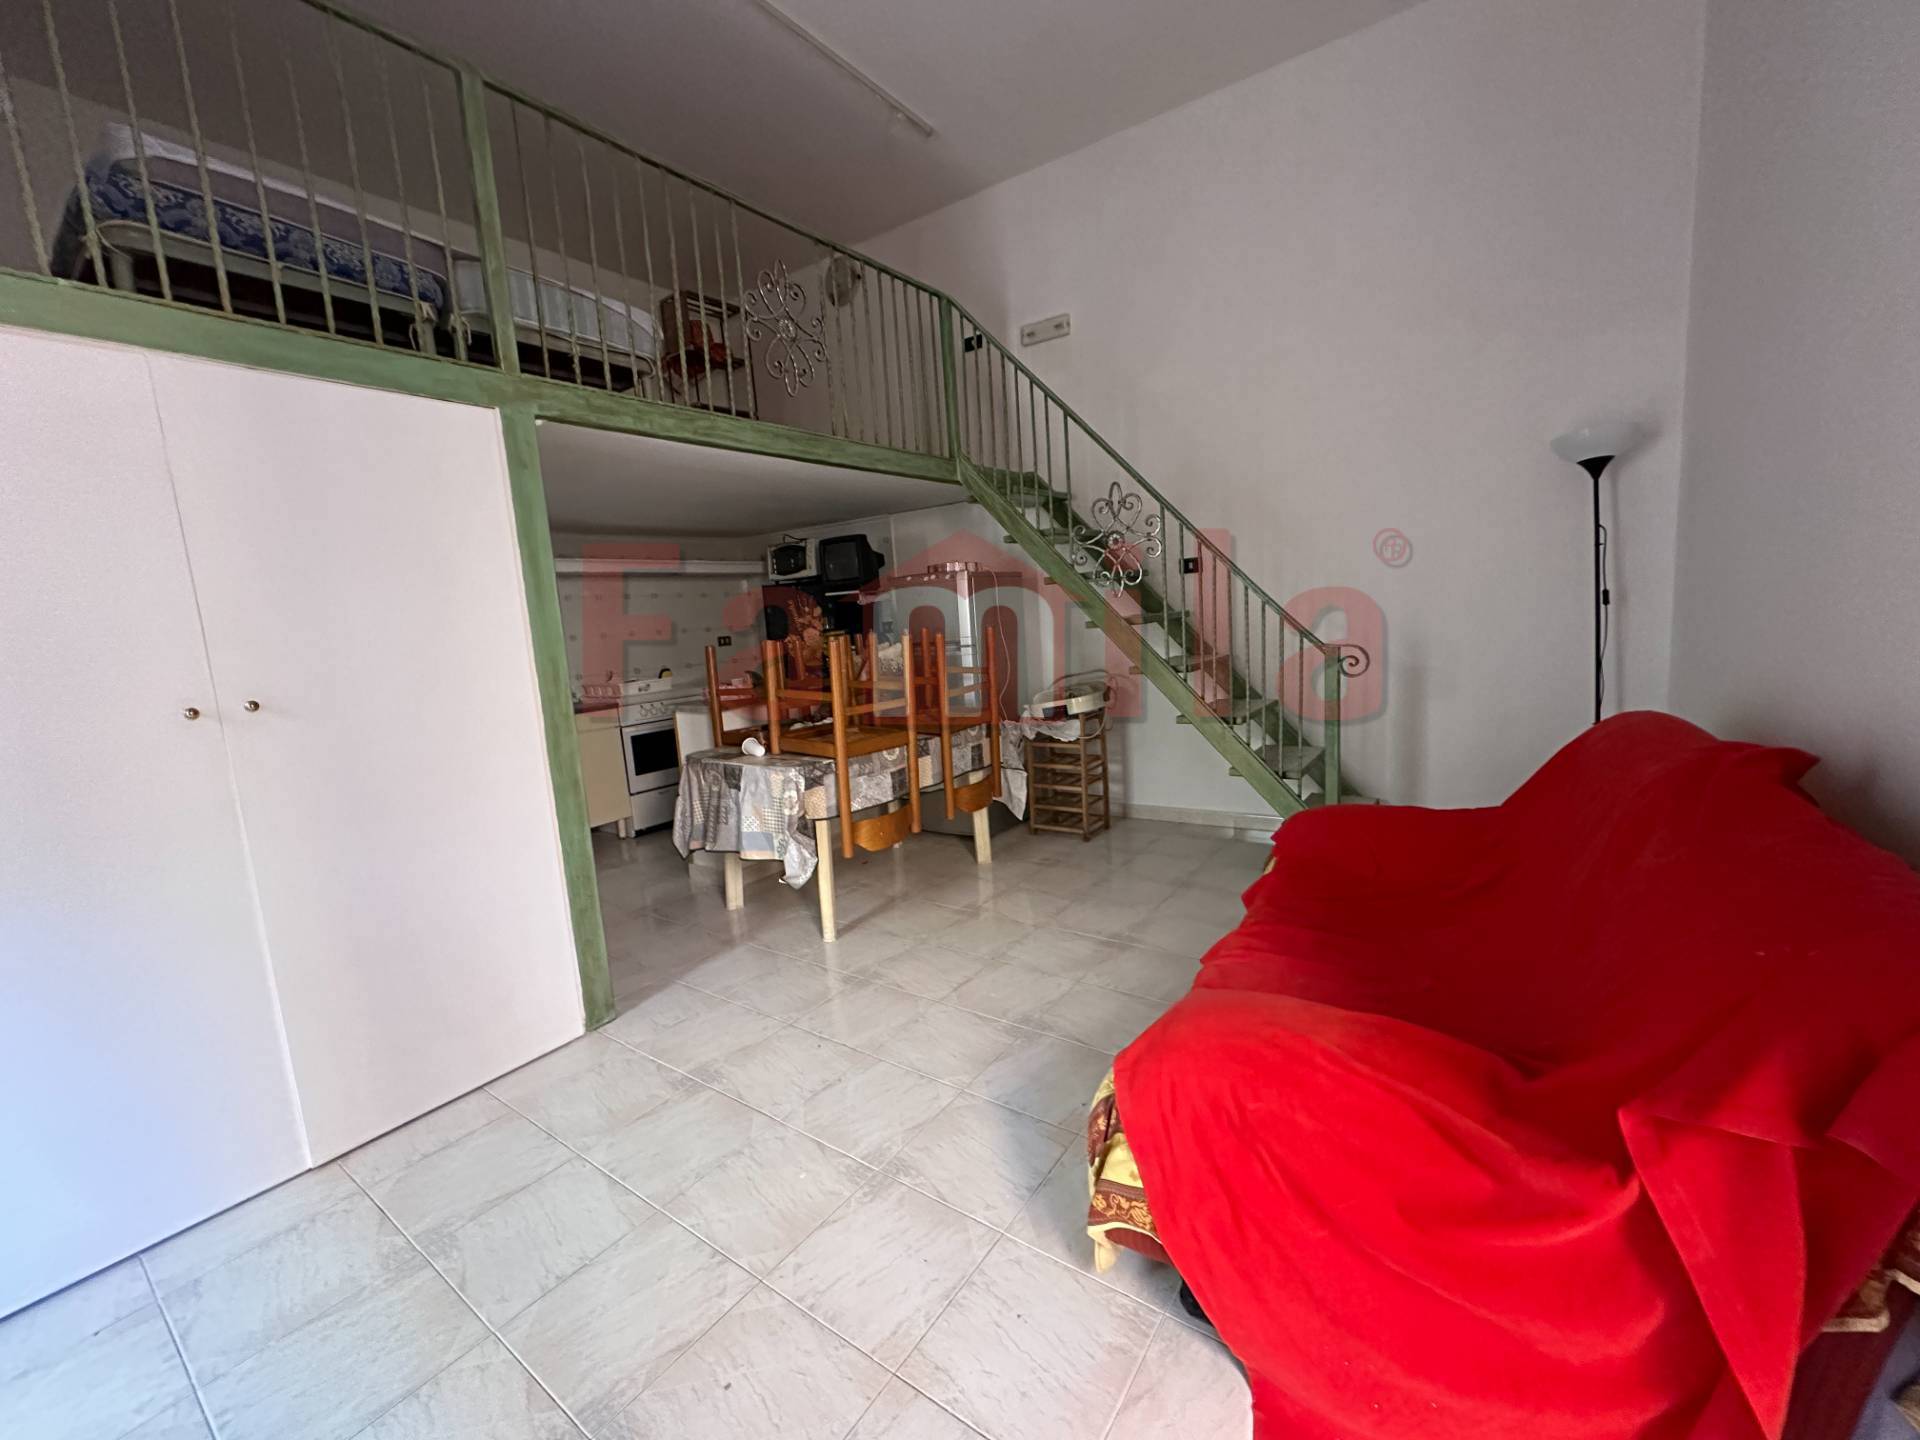 Appartamento in vendita a Sperone, 2 locali, prezzo € 27.500 | PortaleAgenzieImmobiliari.it